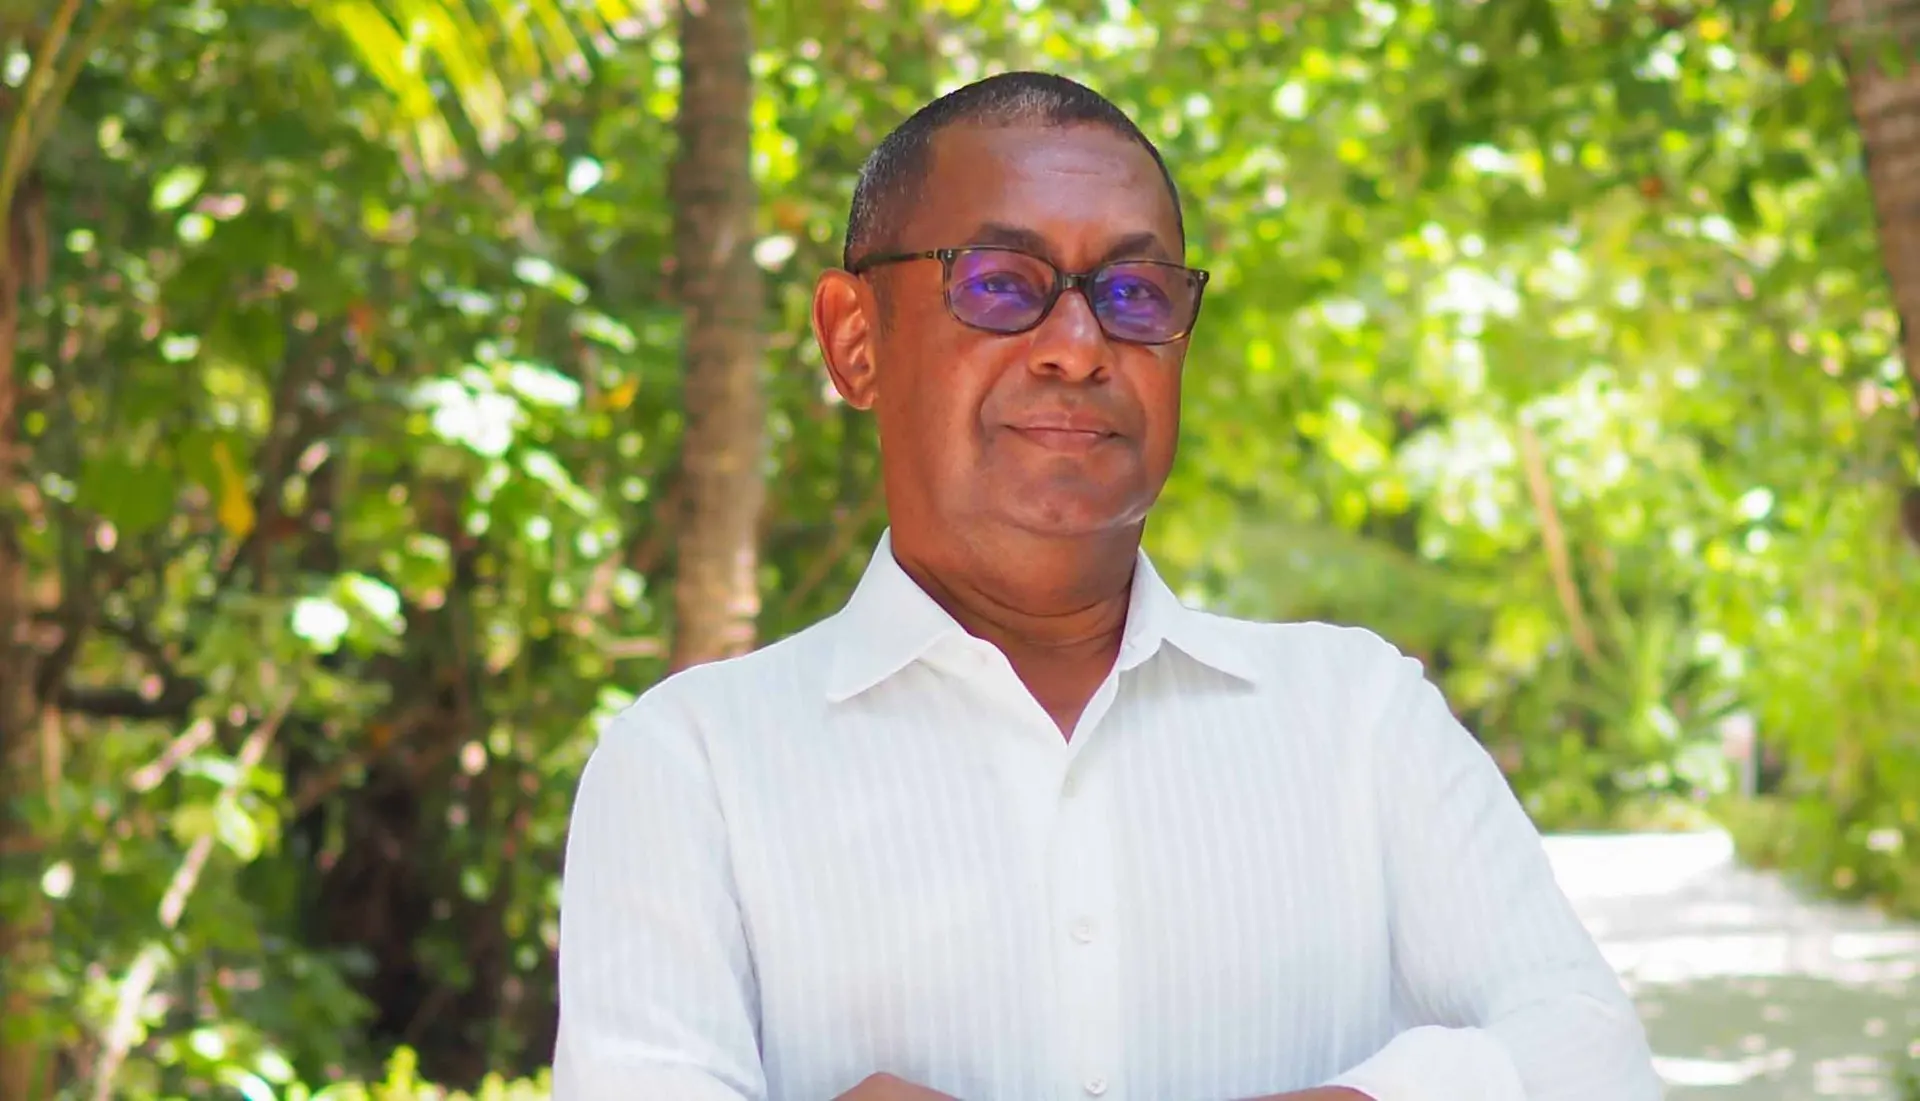 منتجع فاكارو المالديف يعلن عن تعيين جان نويل سانجاراي مديرا للمنتجع